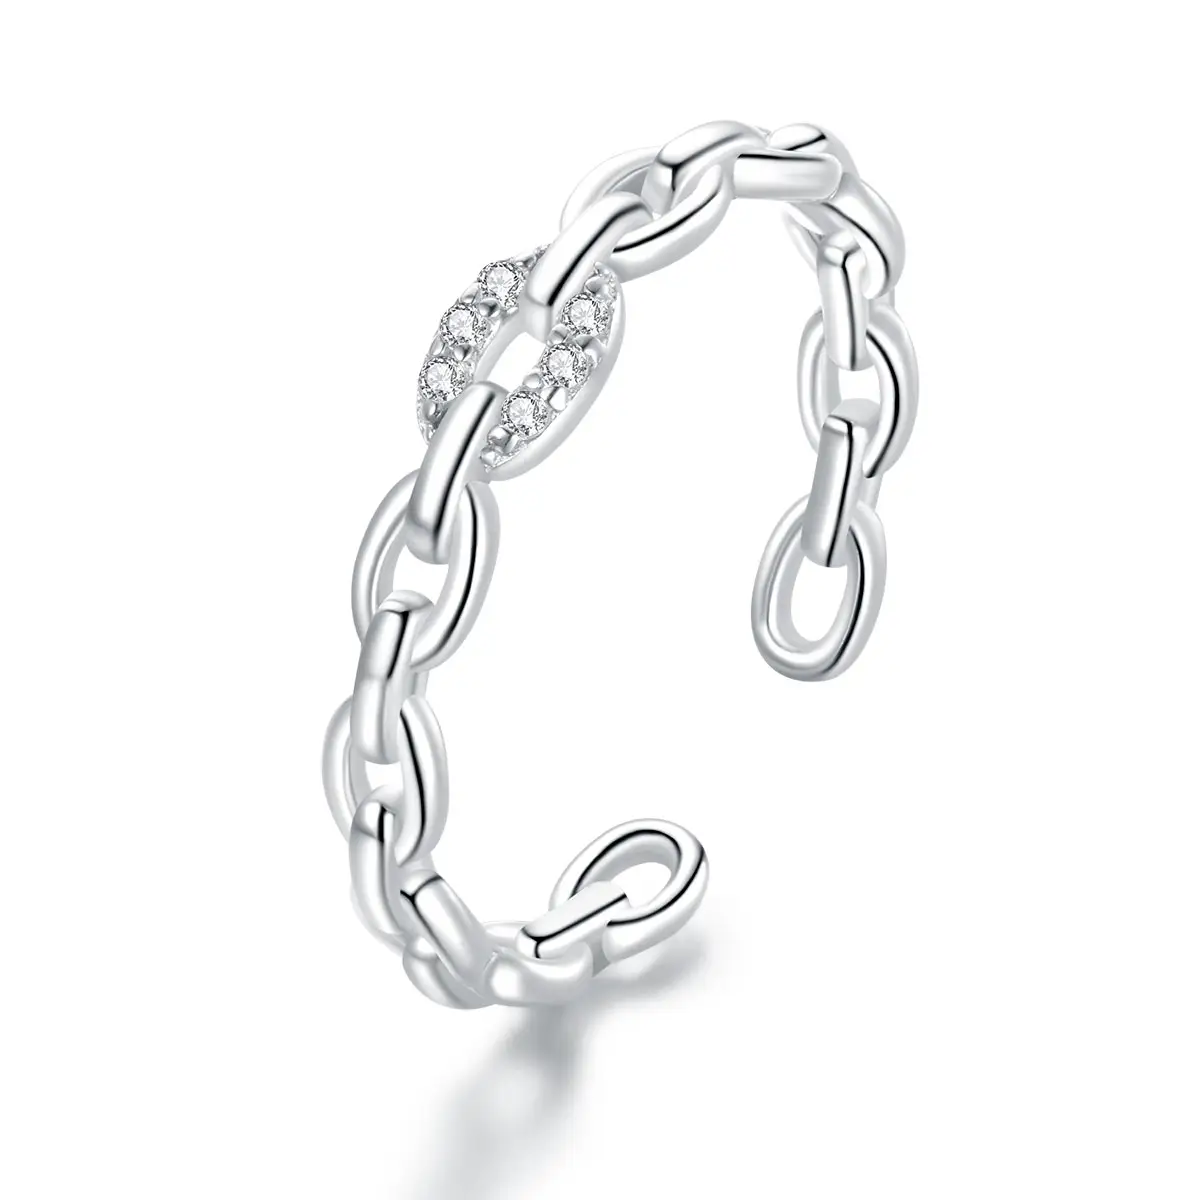 Hochglanzpolierte Schmuckkette Schlüsselring 925 Sterling-Silber offener Ring für Damen